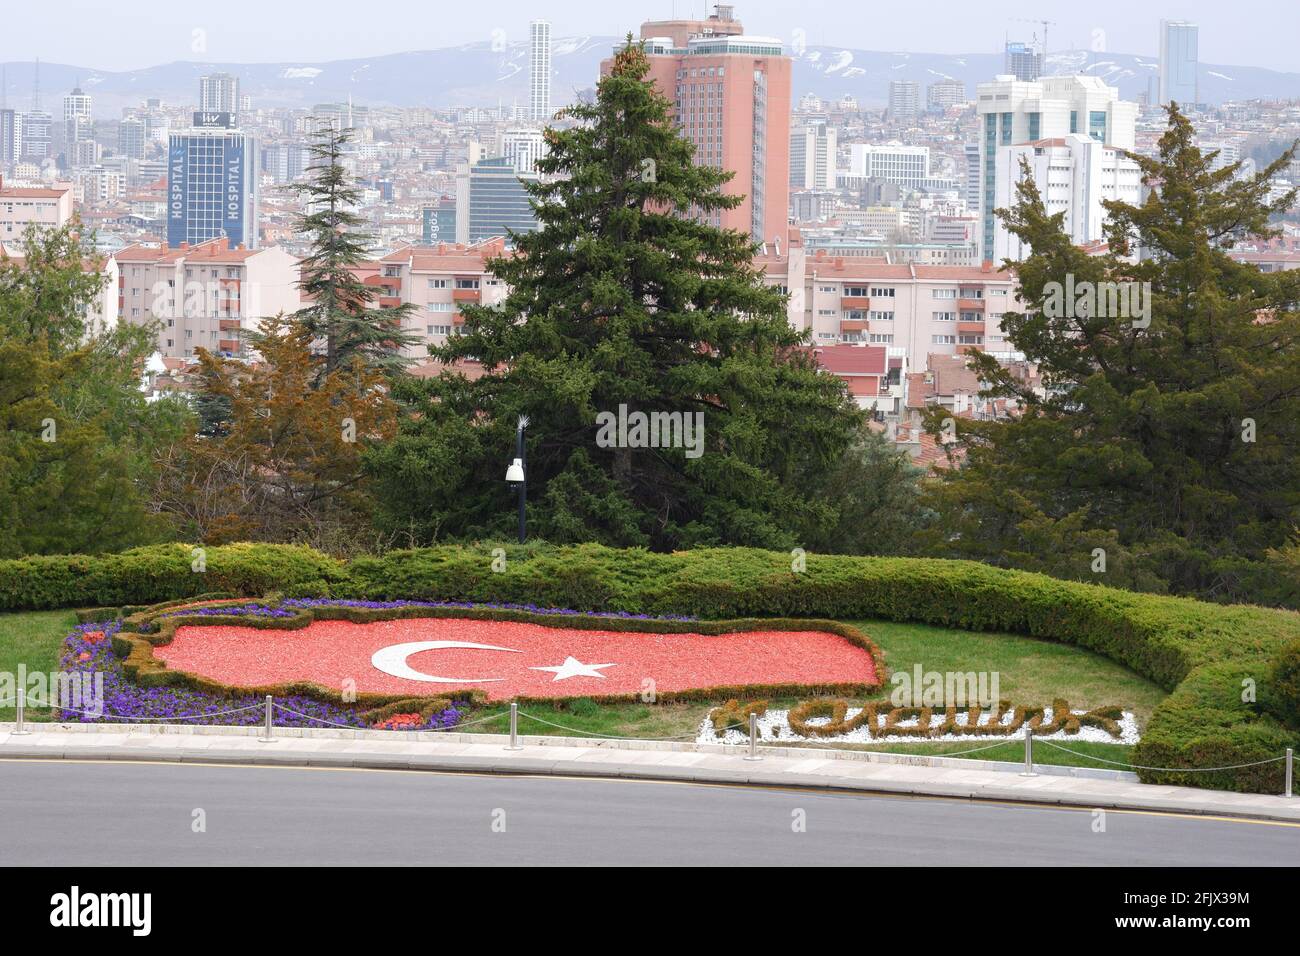 Motiv der türkischen Flagge auf der türkischen Karte im Garten von Anıtkabir (Atatürk-Mausoleum) - Ankara. Auch K. Atatürk Signature und Ankara City View Stockfoto